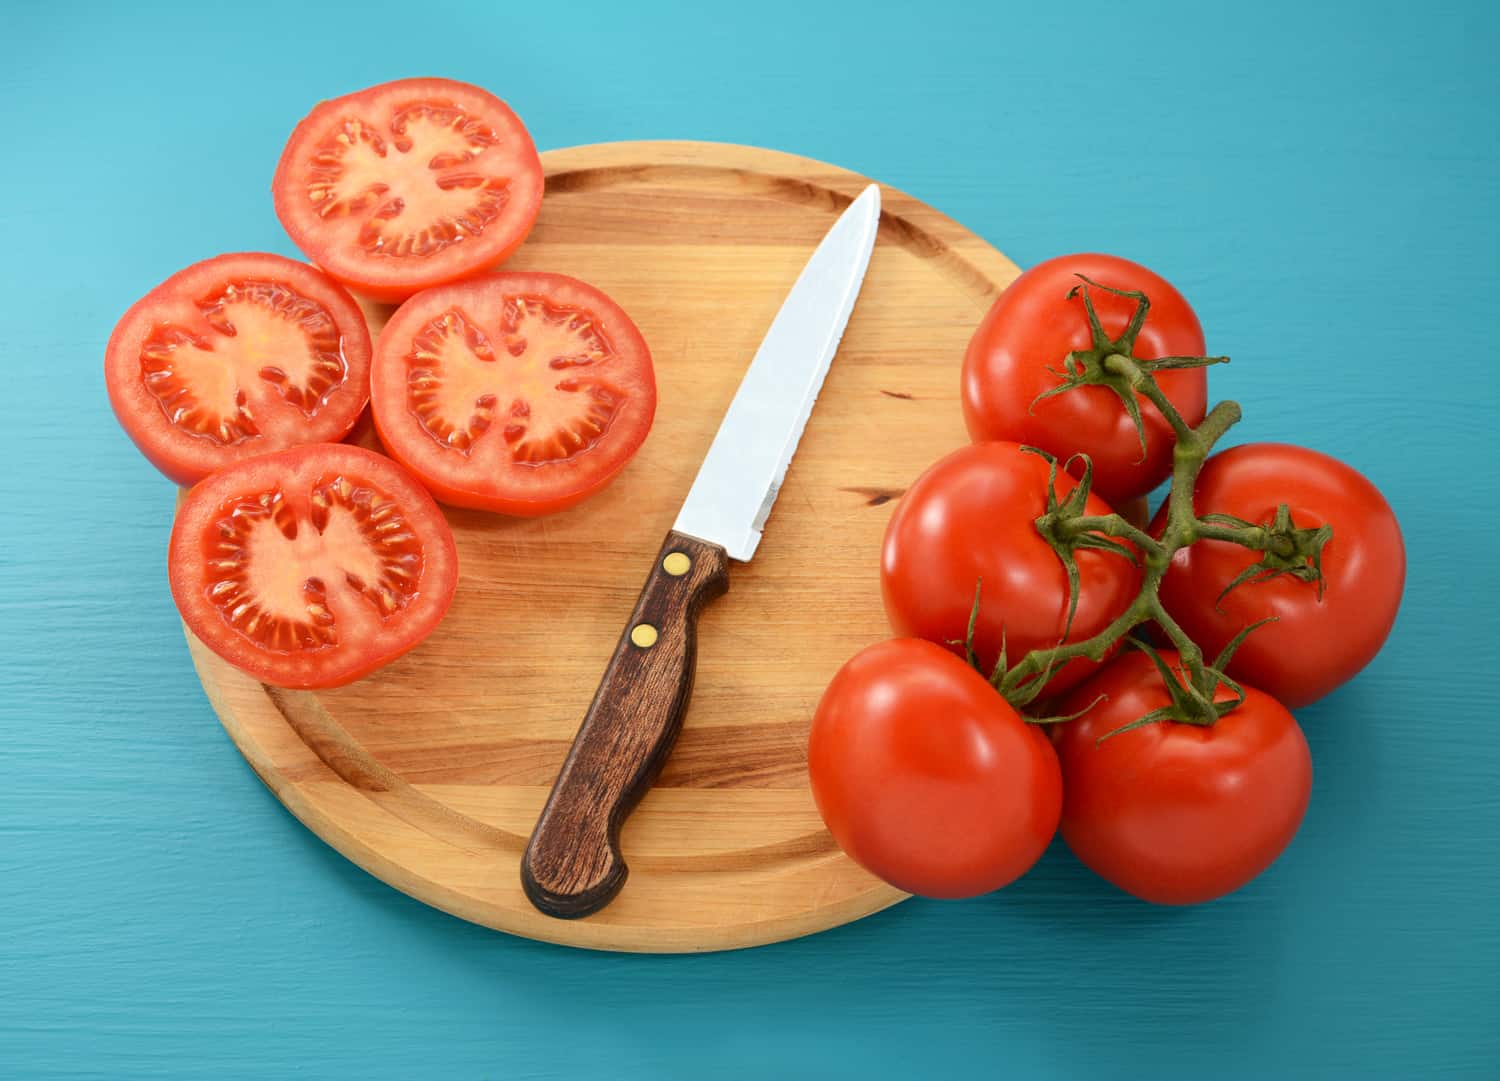 熟番茄，整只，用锯齿刀切成薄片放在木砧板上